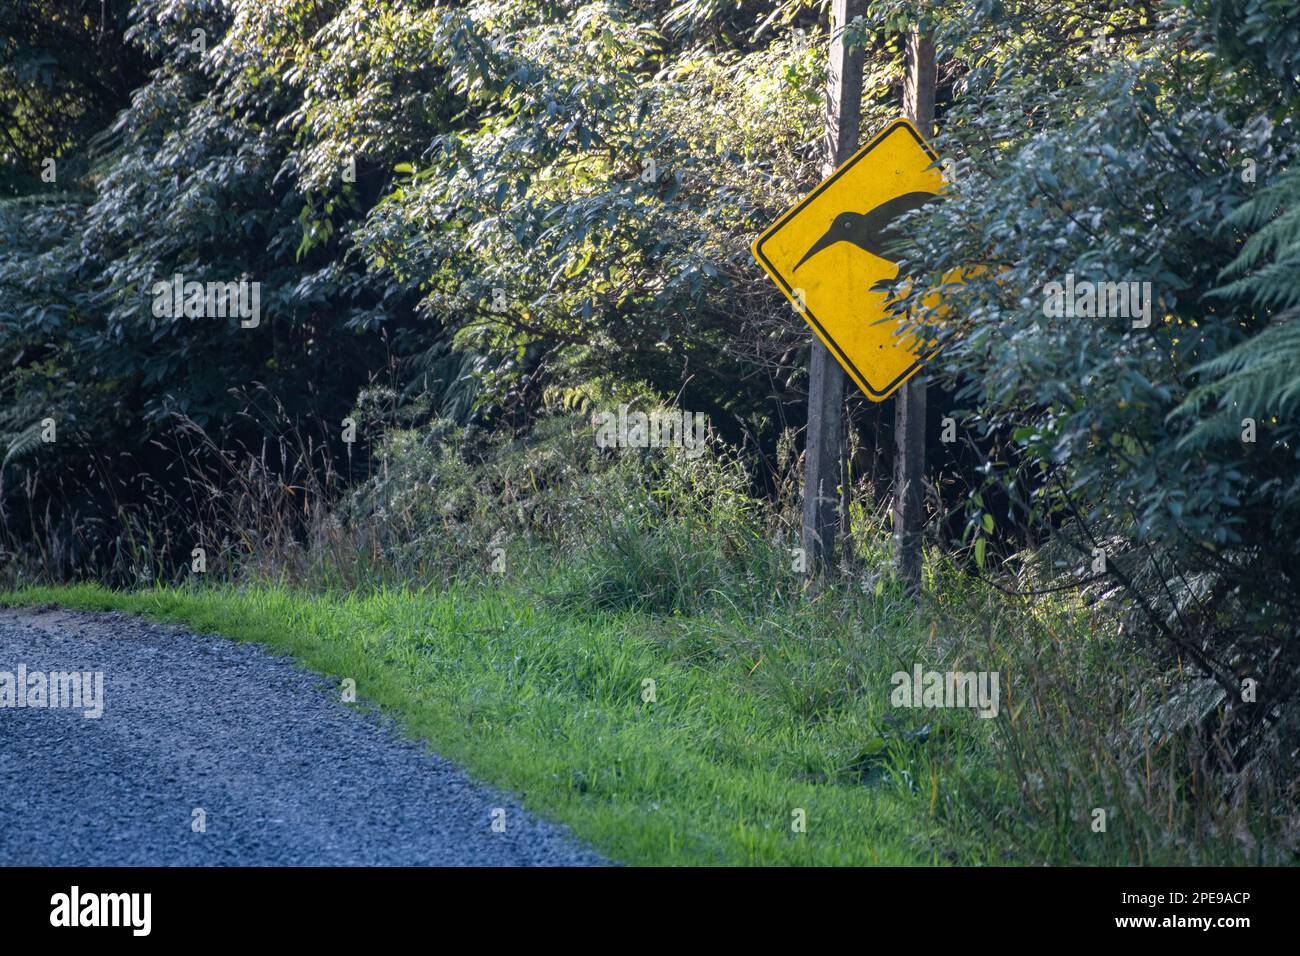 Un cartello giallo di attraversamento del kiwi avverte i conducenti di essere cauti nei confronti della fauna selvatica che attraversa la strada. Foto Stock